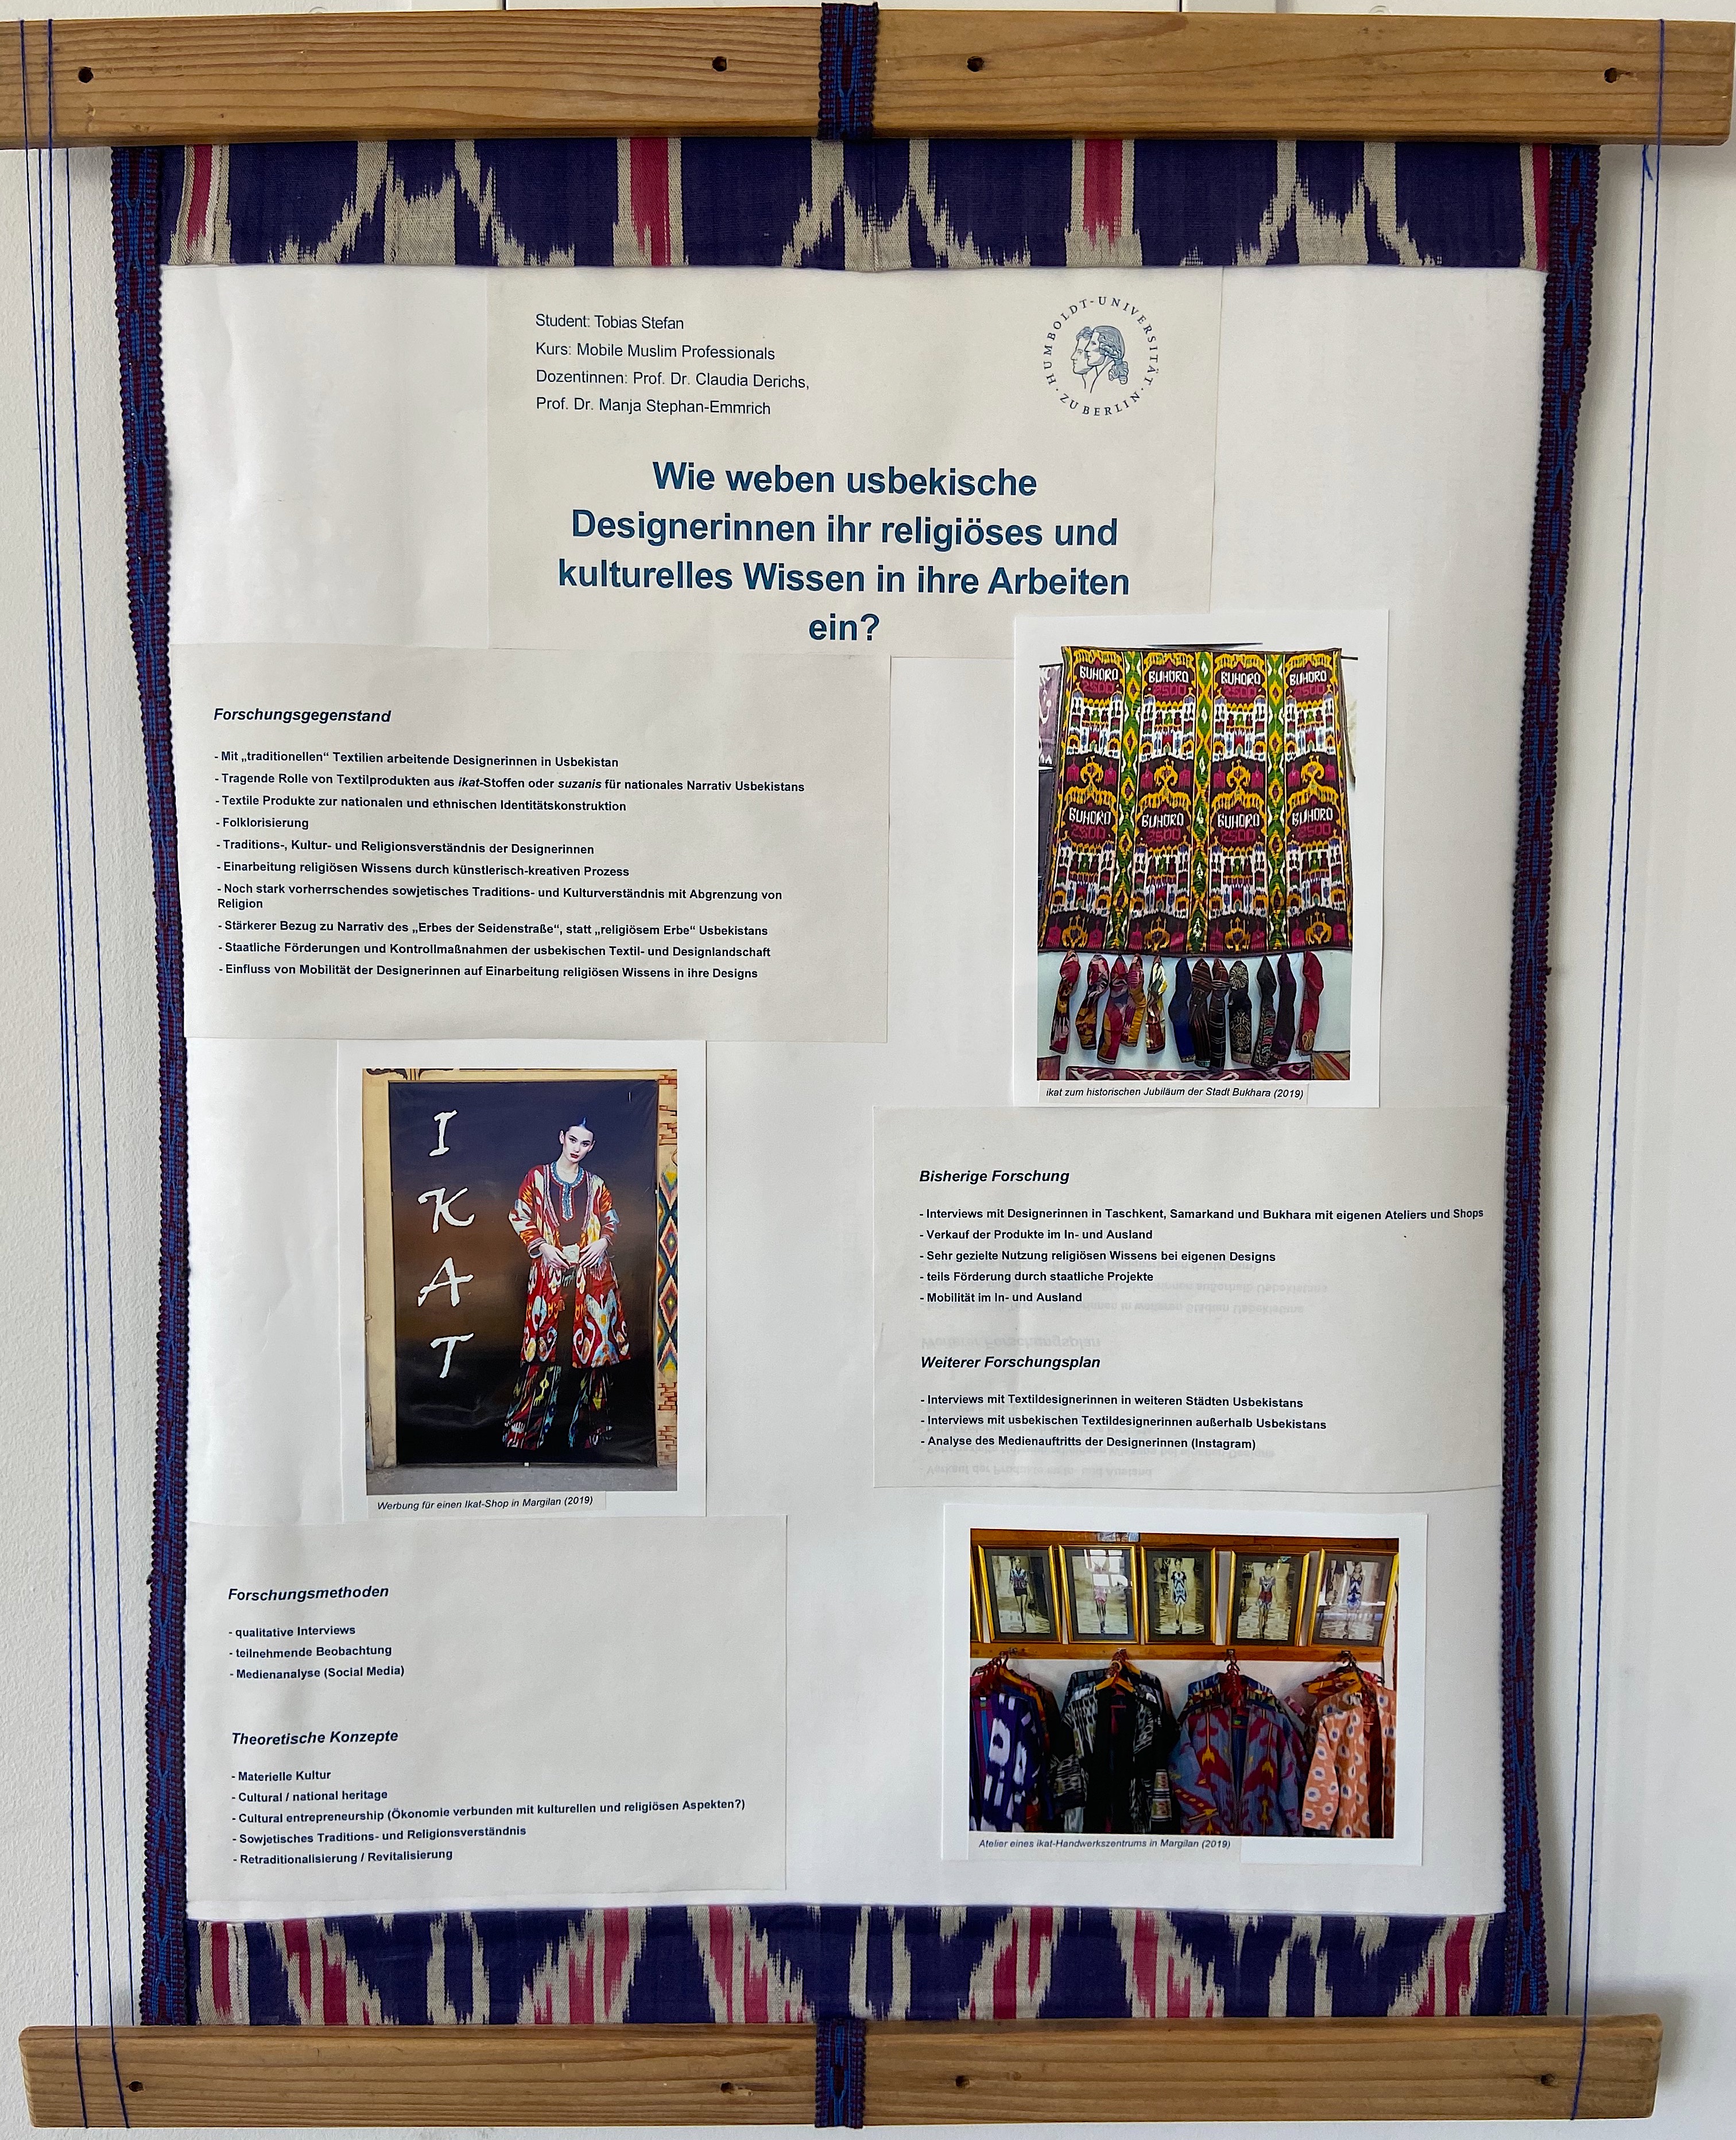 Wie weben usbekische Designerinnen ihr religiöses und kulturelles Wissen in ihre Arbeiten ein?